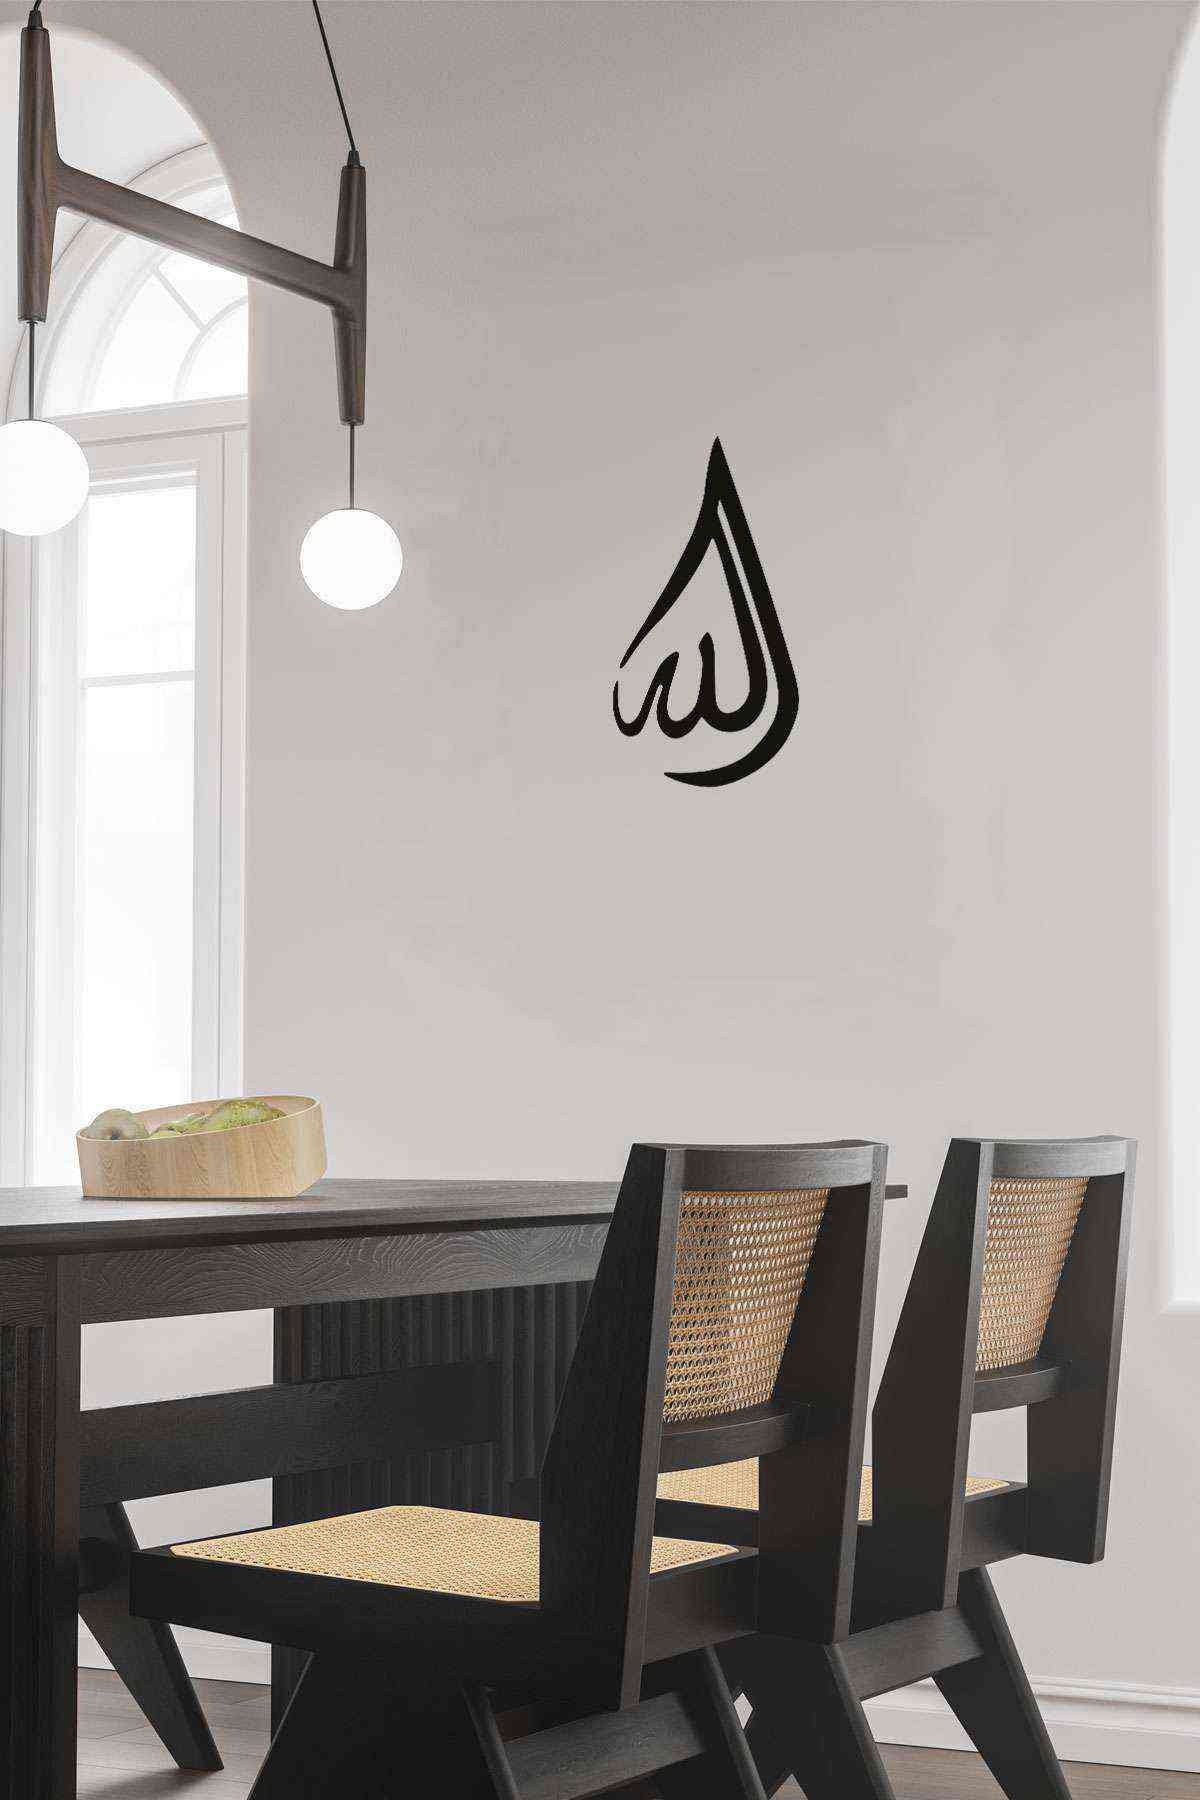 Allah Lafz Damla Figürlü 3D Mdf Tablo Evinize Ofisinize Yeni Tarz